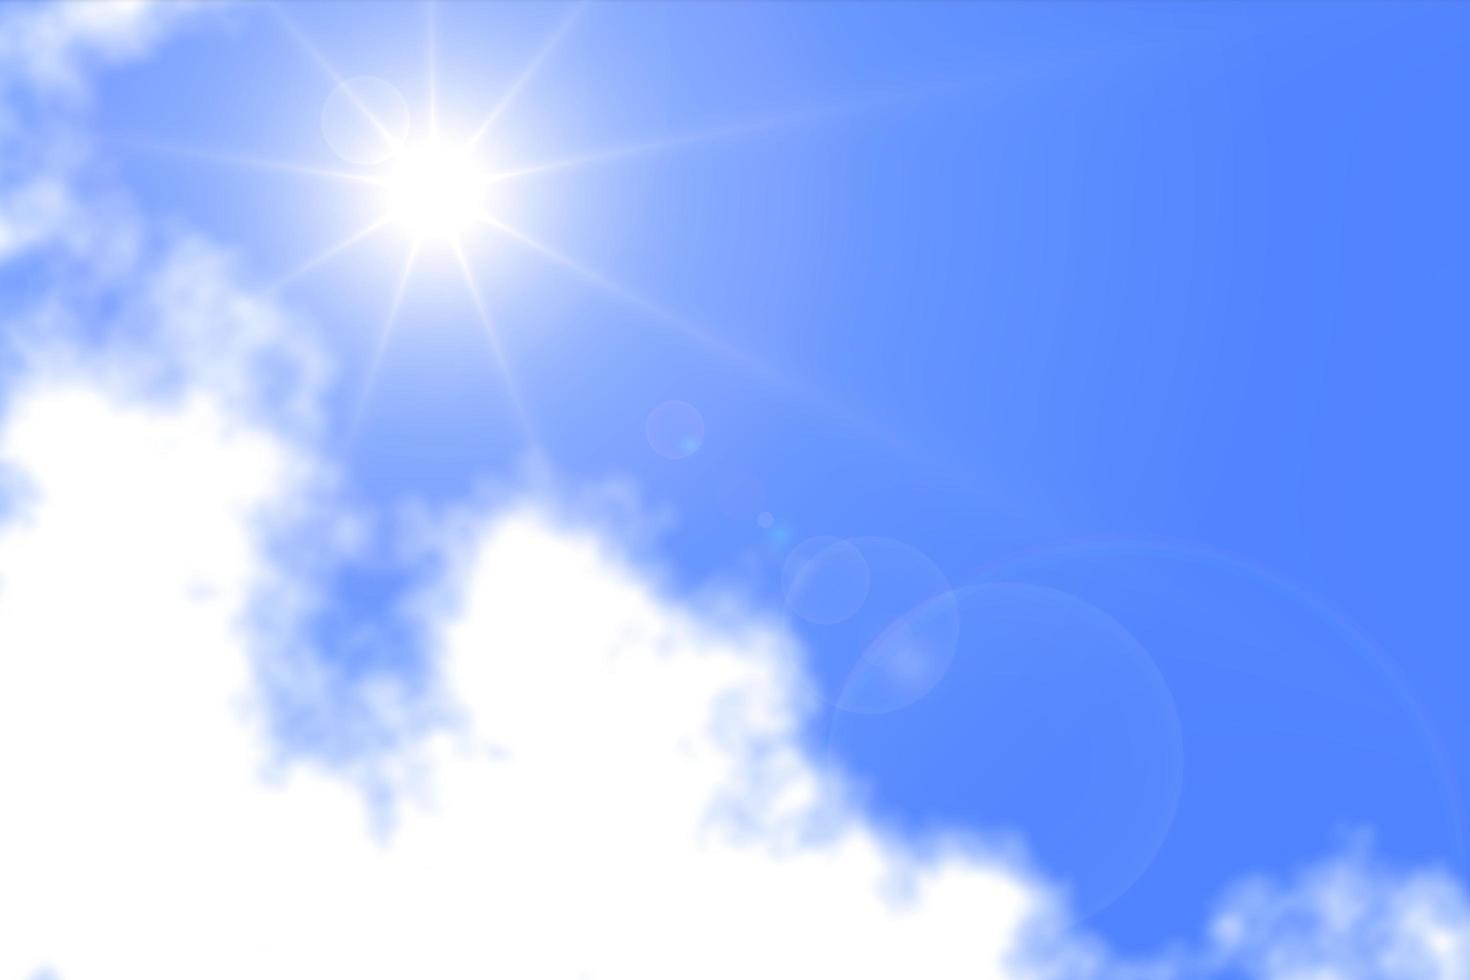 sol turva brilha no céu azul em meio a nuvem, abstrato foto